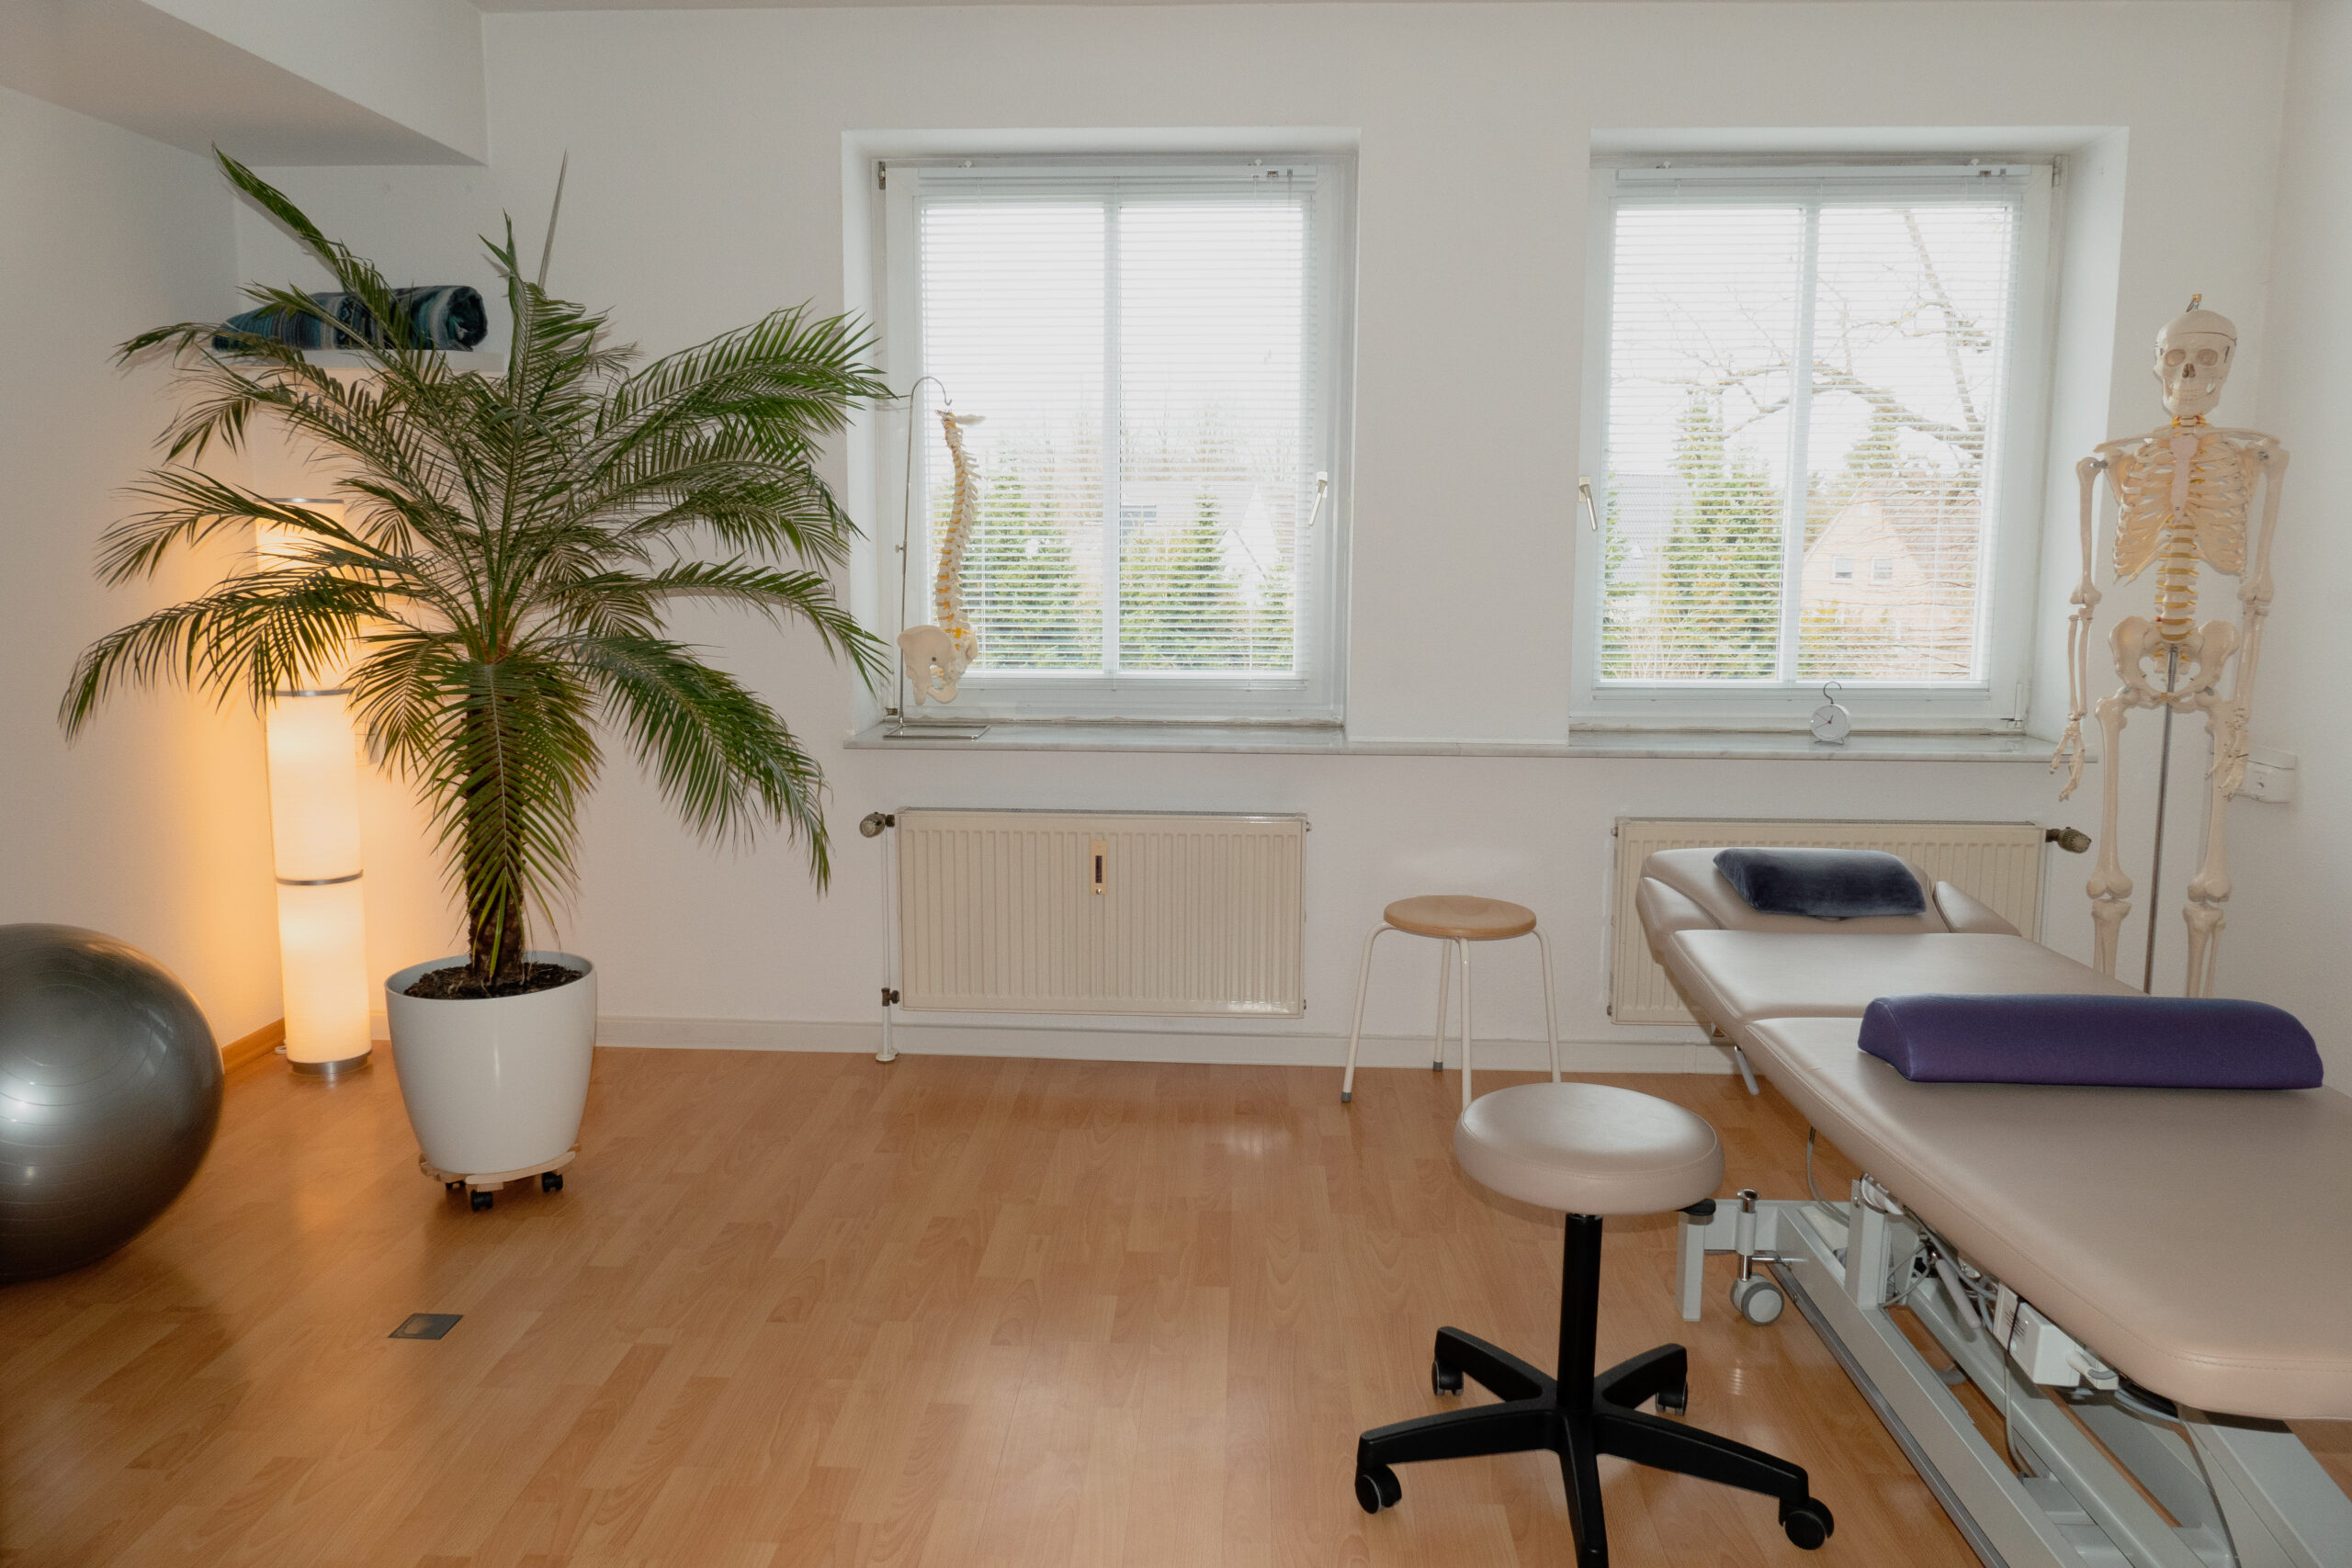 In diesem einladenden Therapieraum können Patienten in angenehmer Atmosphäre professionelle physiotherapeutische Behandlungen erhalten.